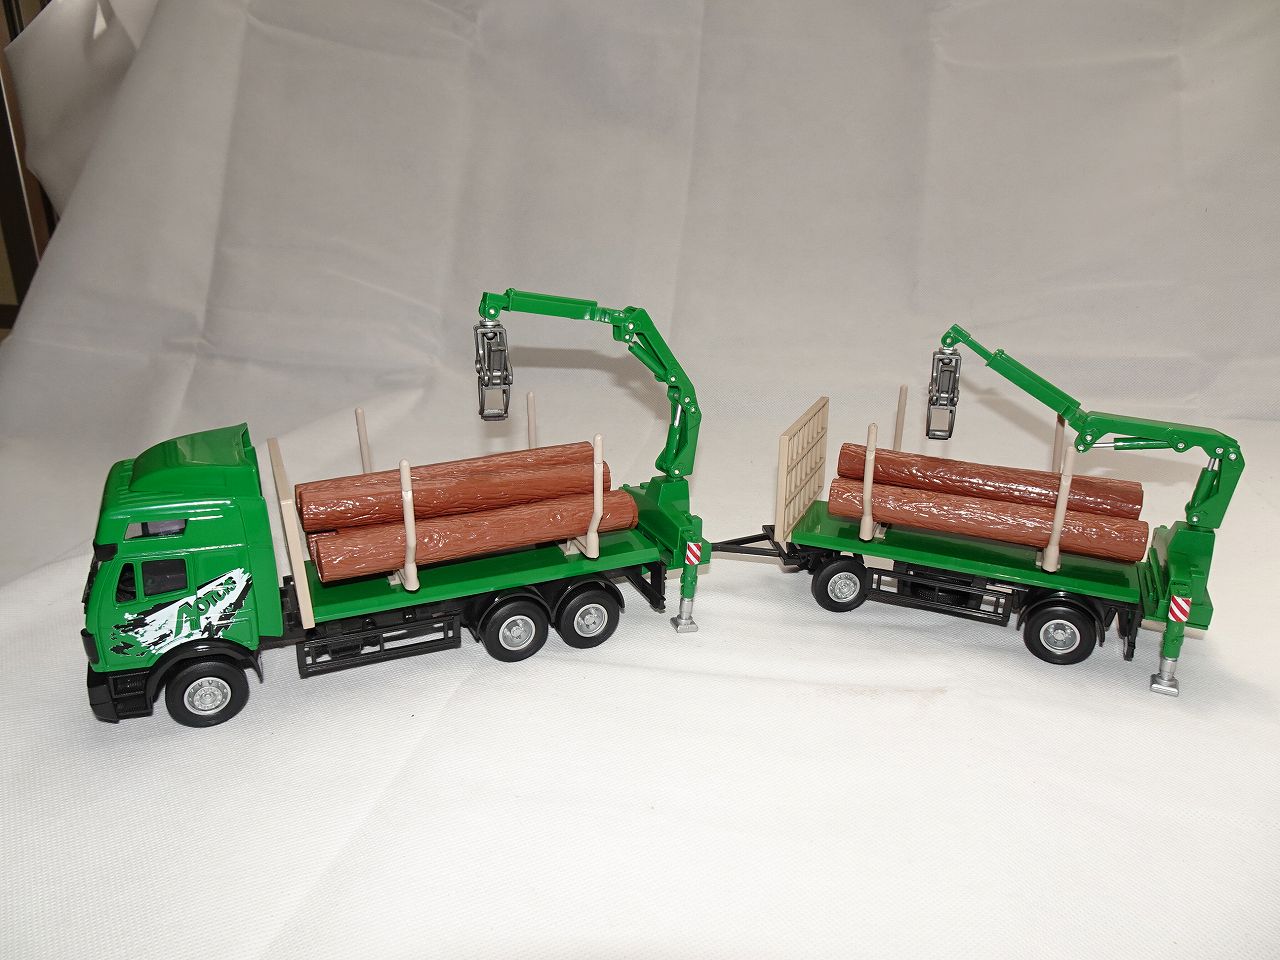 ホンウェル社ミニカー クレーン付き木材運搬トラック＋クレーン付き木材運搬トレーラのメインビジュアル